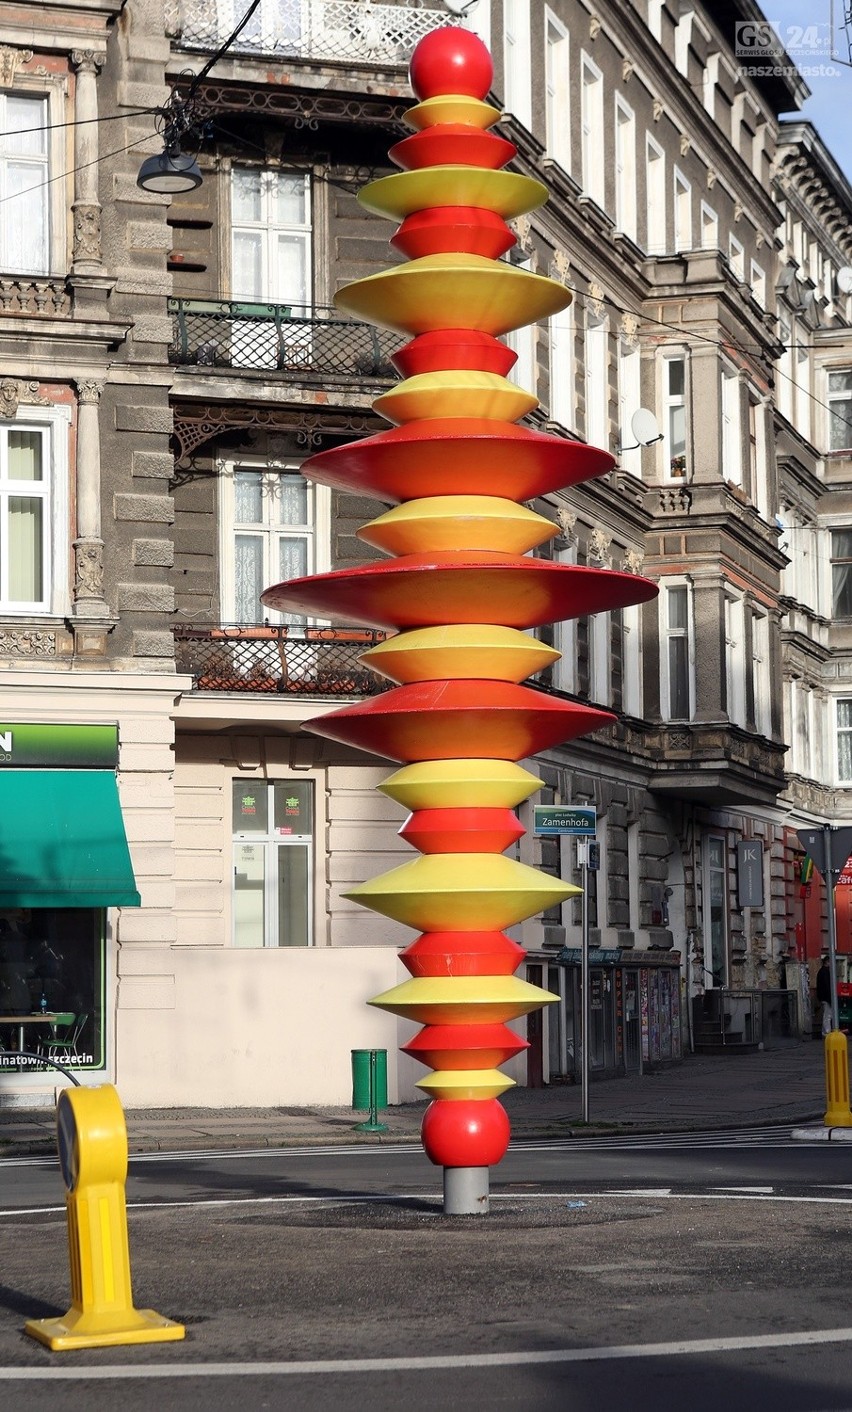 Rzeźba "Fryga" w Szczecinie. Dlaczego popękała? Bo to "obiekt prototypowy"